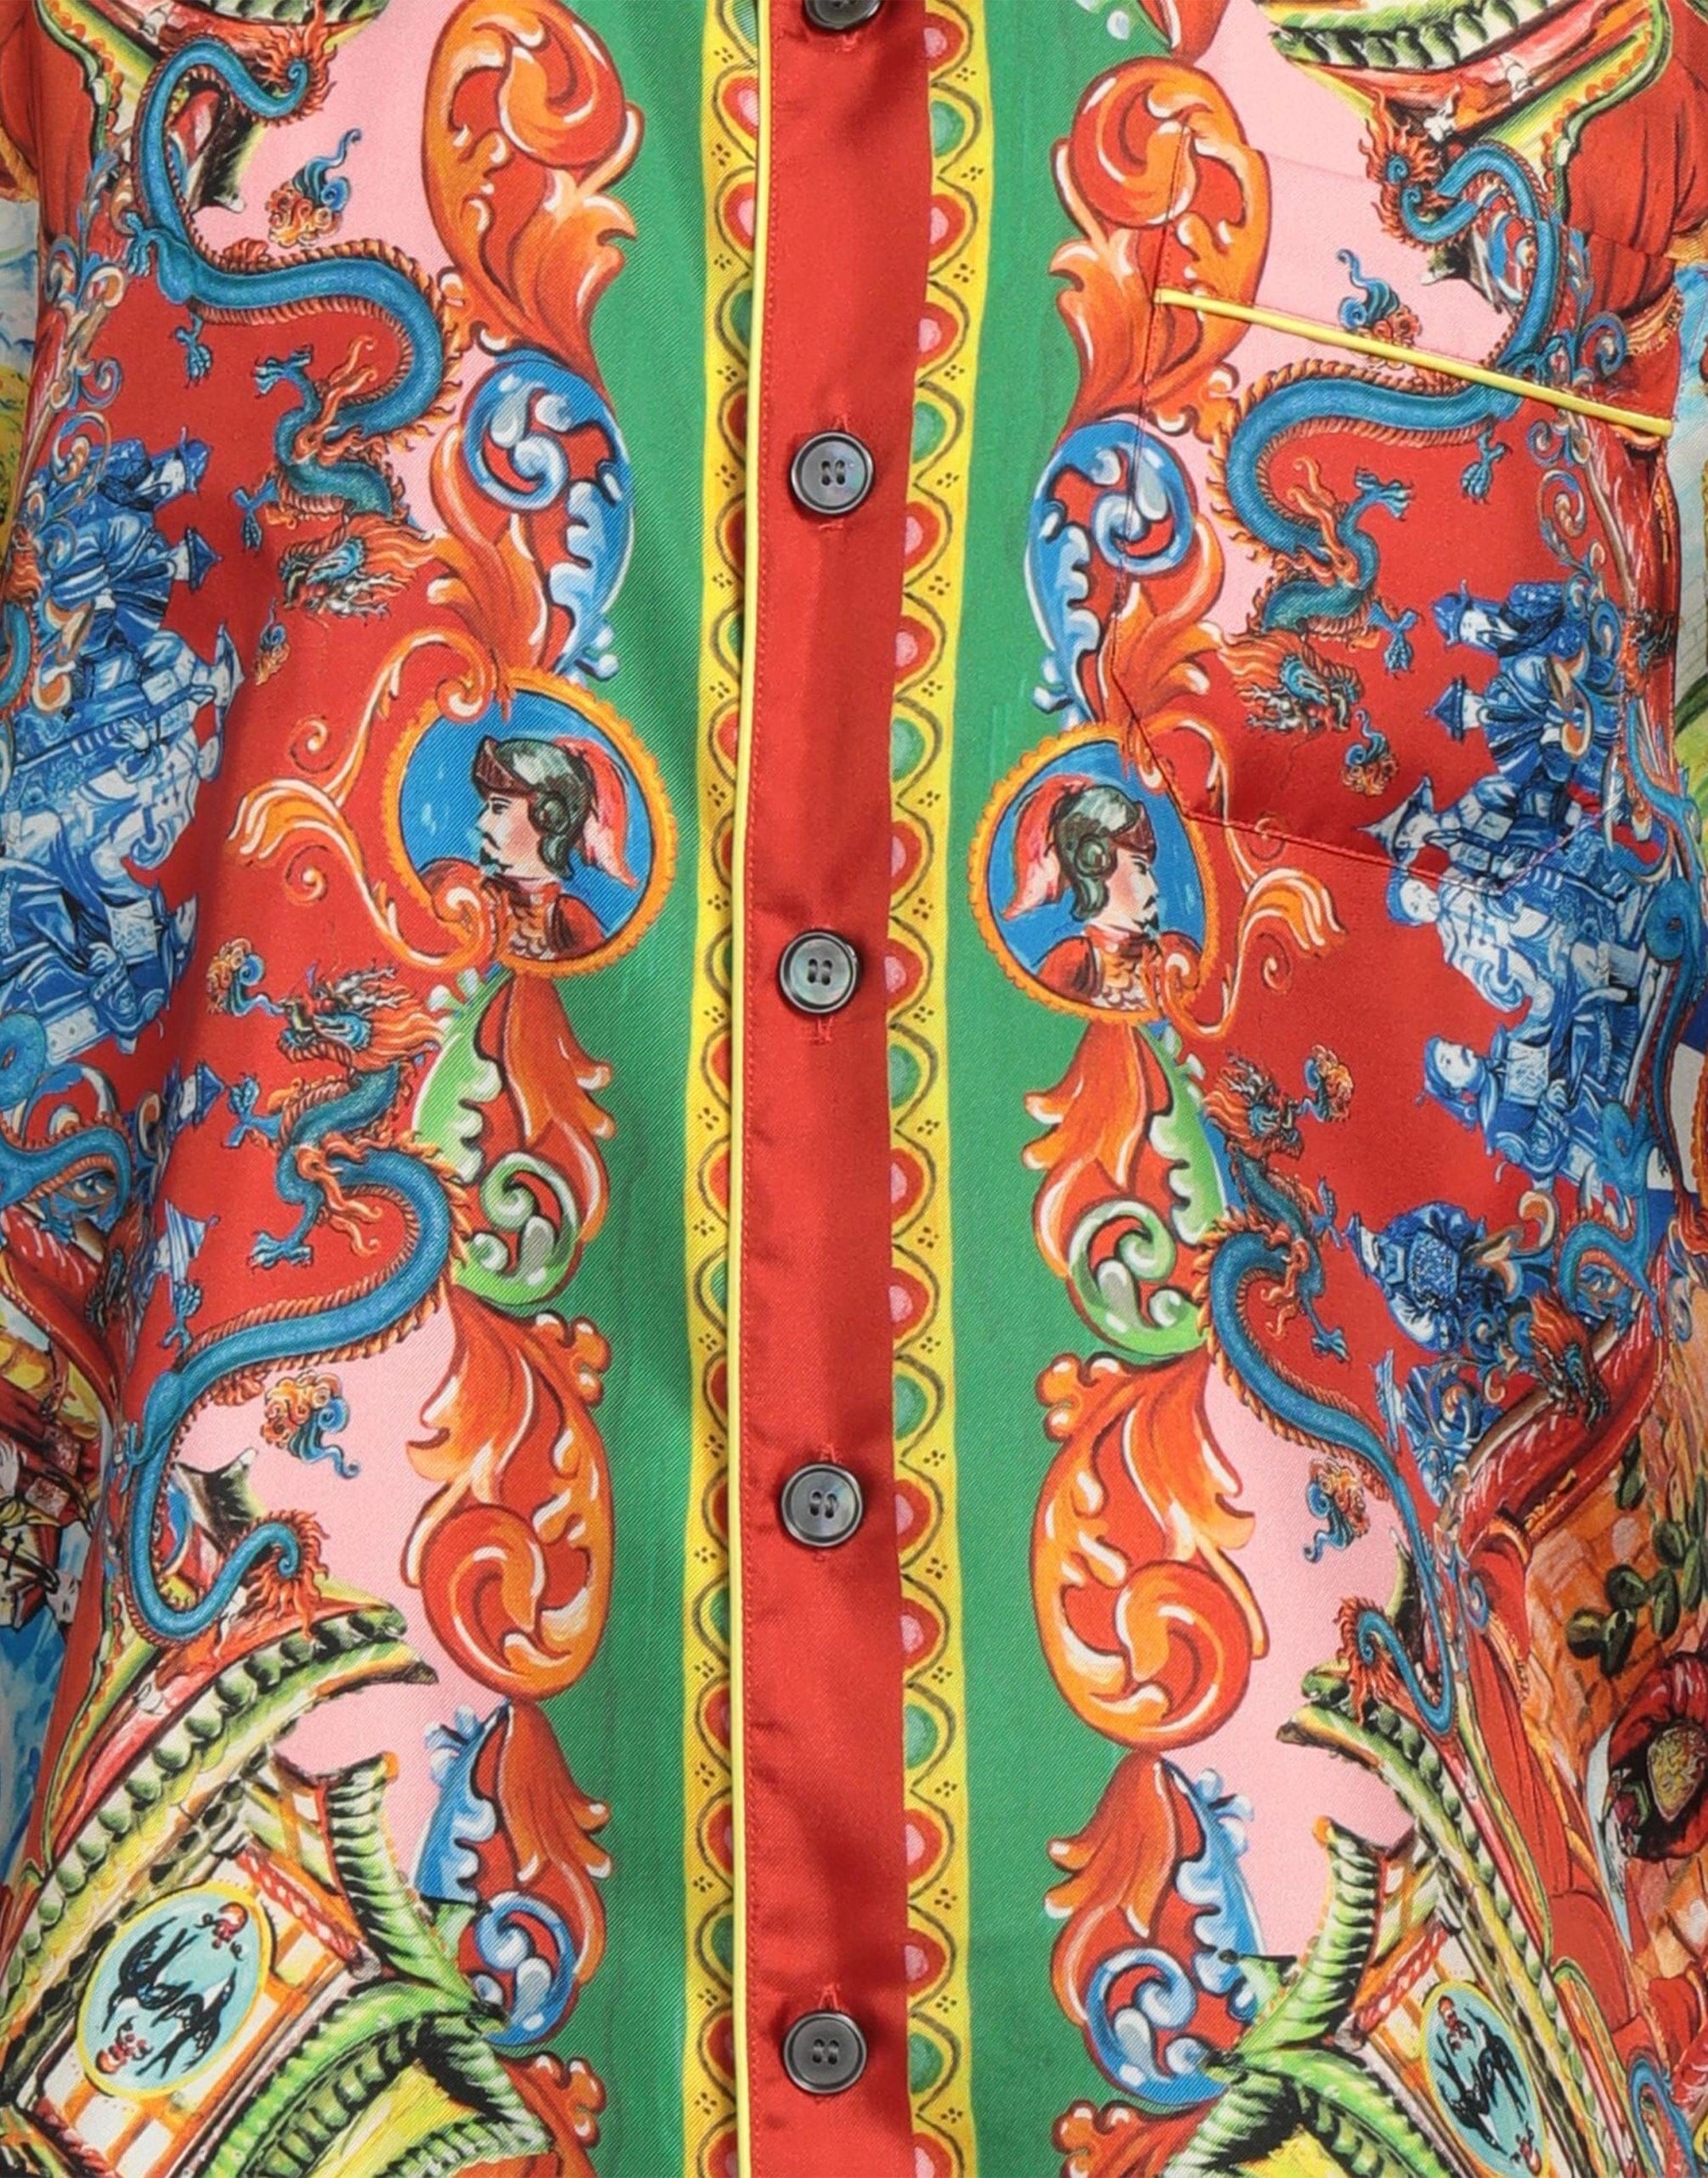 Dolce & Gabbana Silk Shirt With Dragon Print